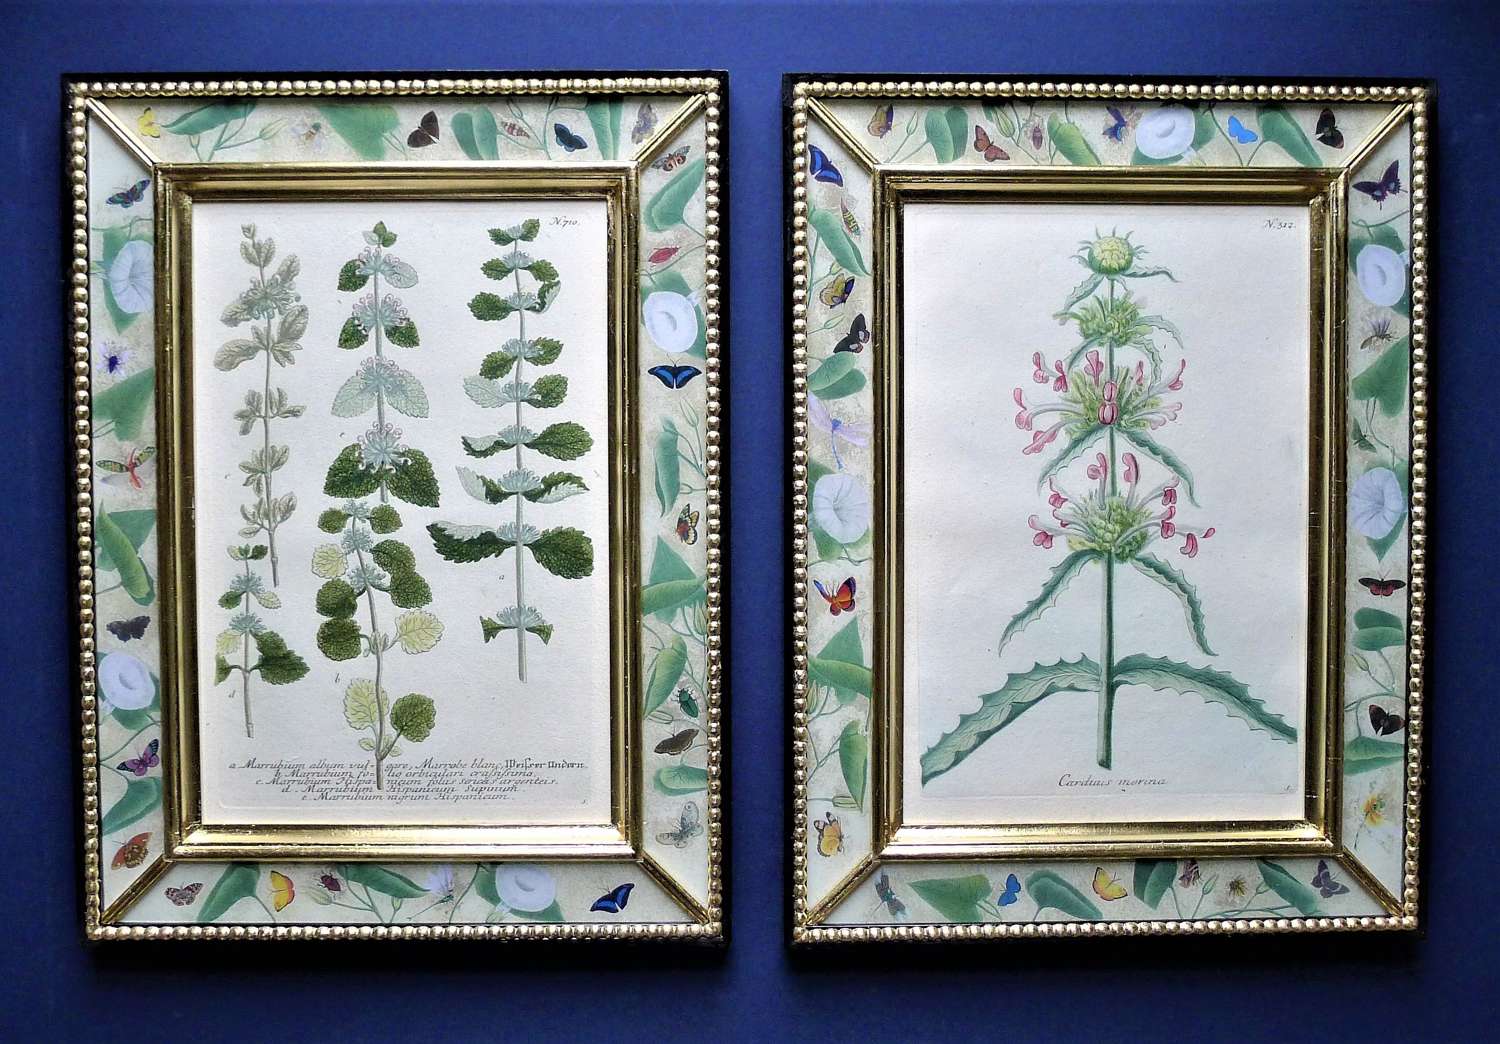 Weinmann - 18th century botanical engravings